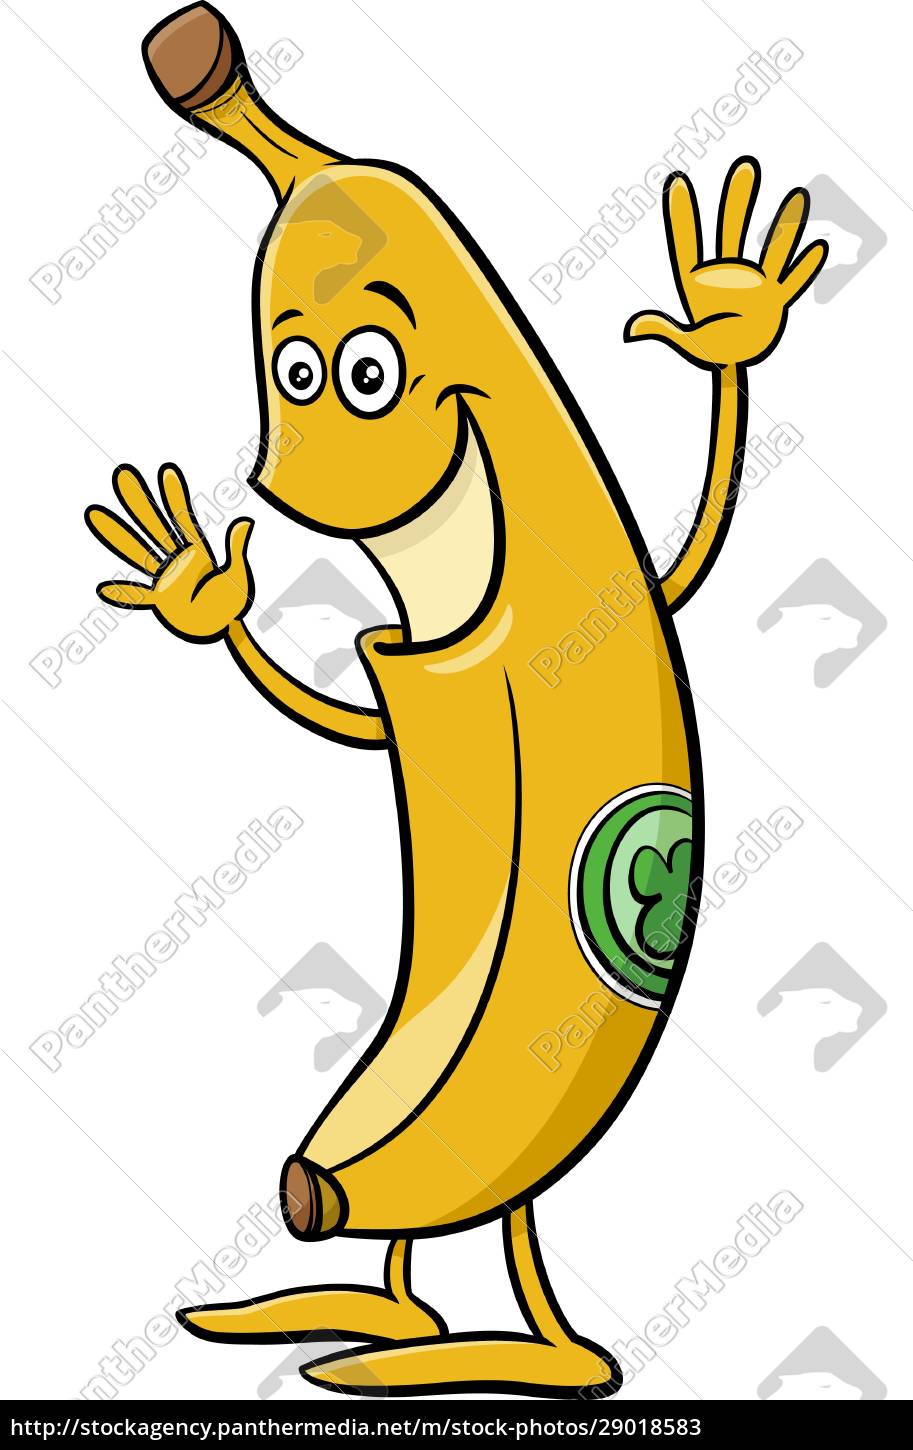 Personagem de desenho animado de banana feliz